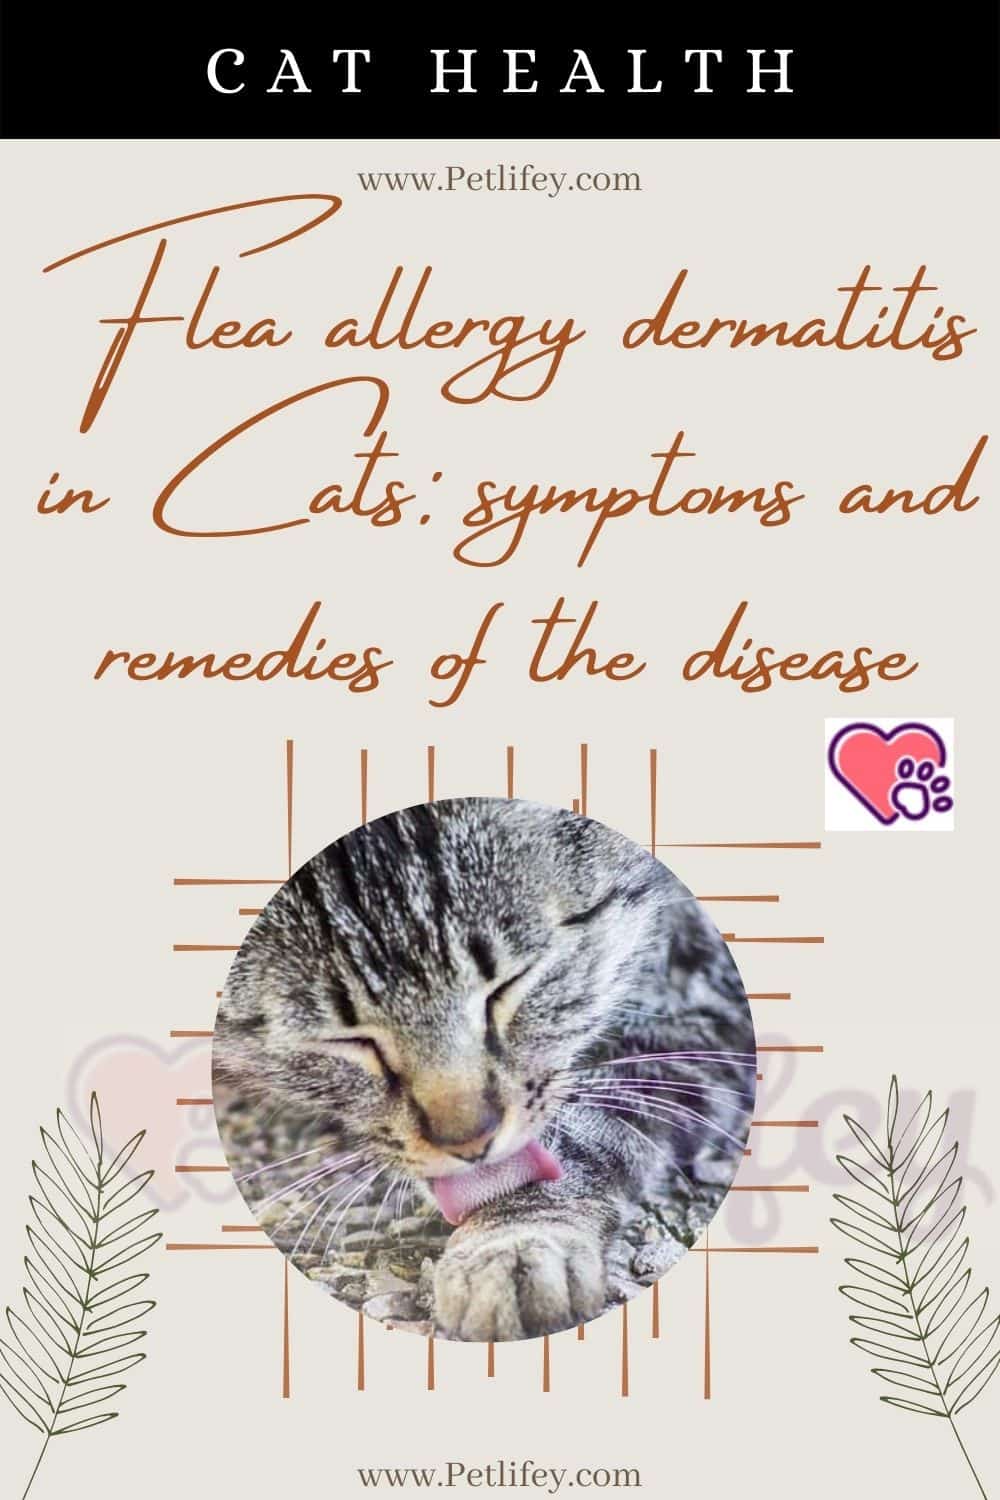 Flea allergy dermatitis in Cats